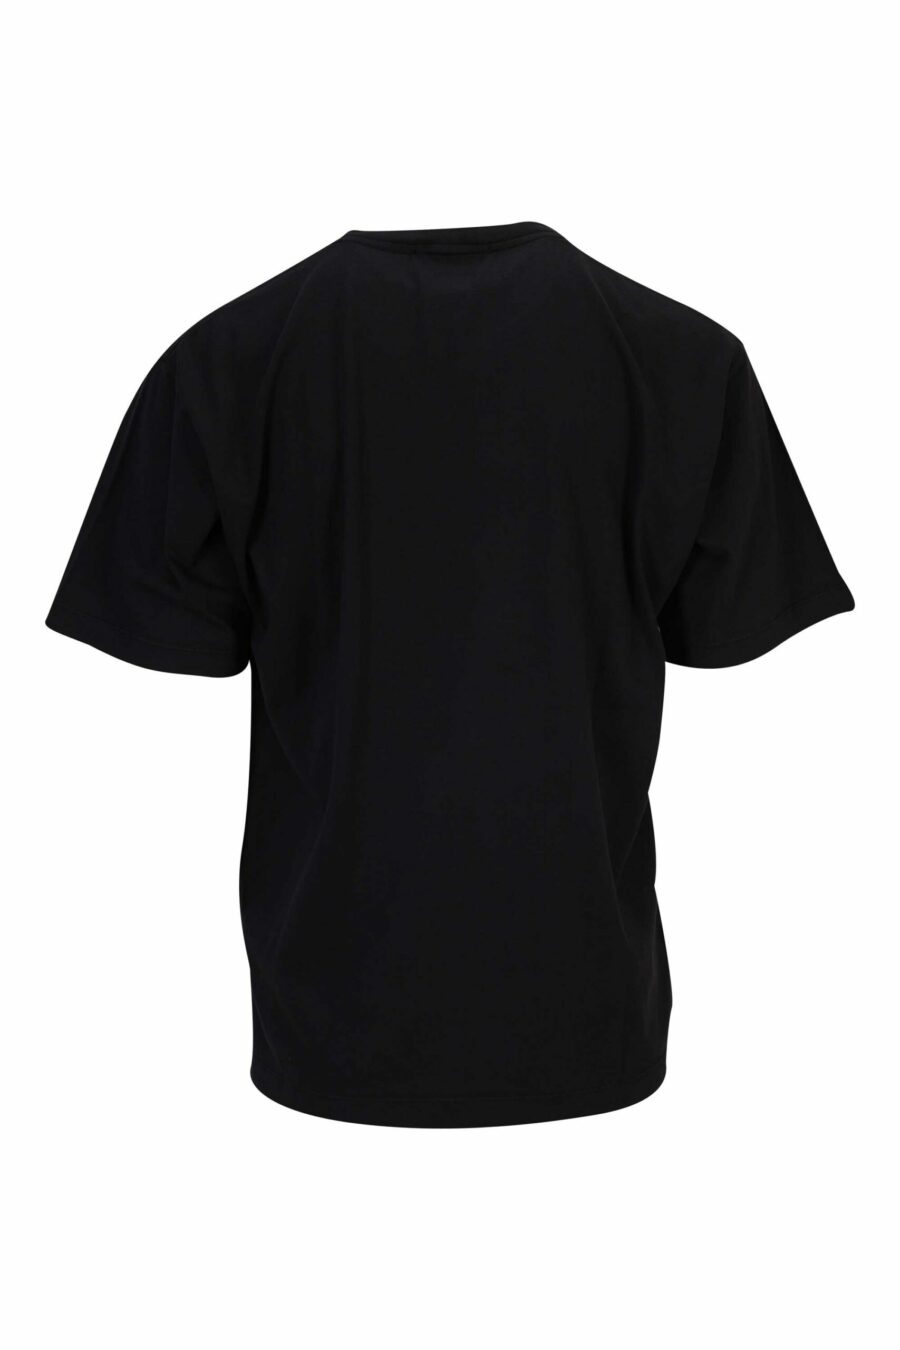 T-shirt preta com maxilogo de bússola - 8052572907272 1 à escala